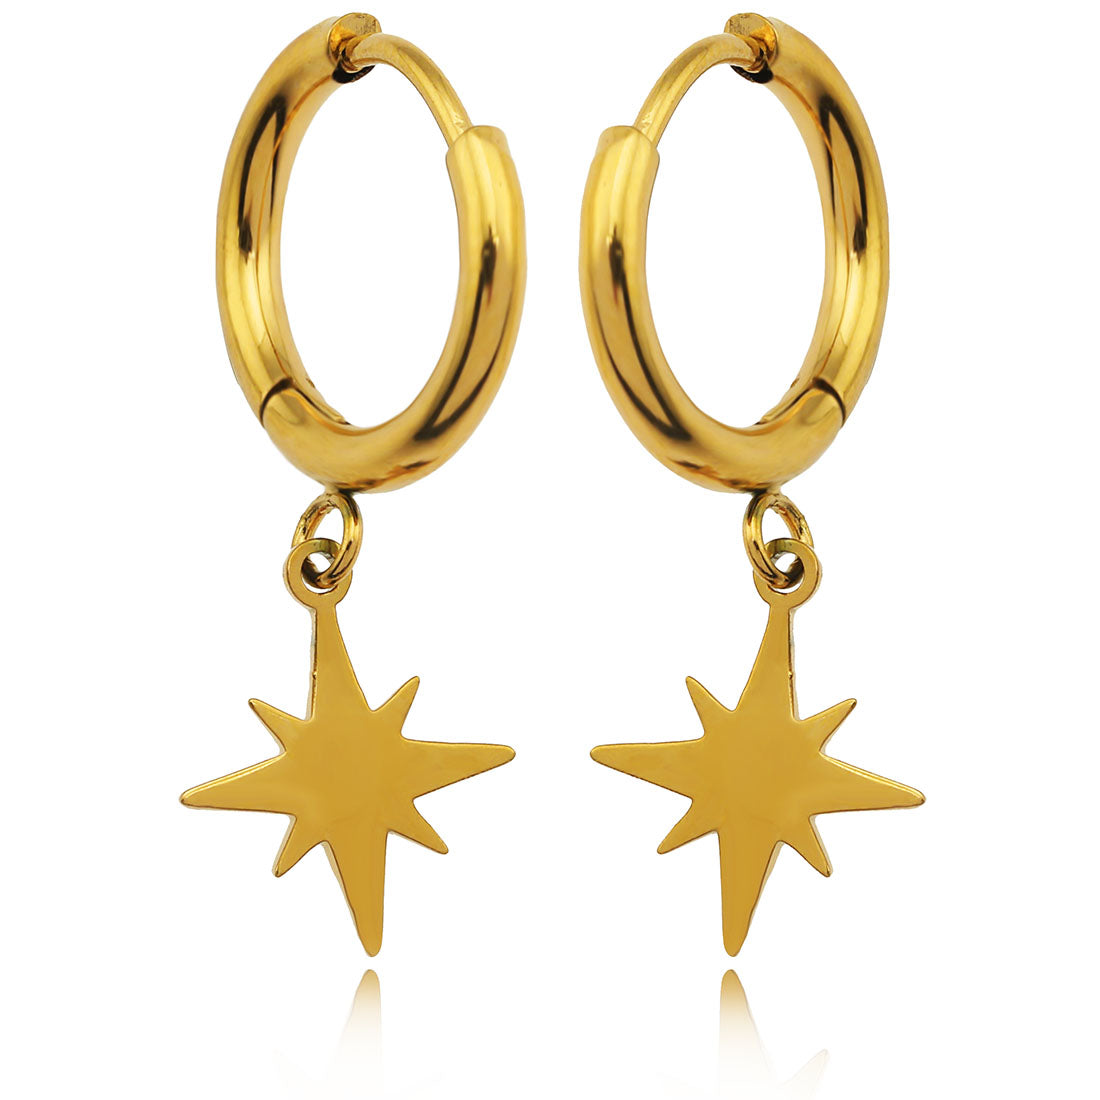 hackney_nine | hackneynine | KAYLIN21255_earrings hoops | affordable_jewelry | dainty_jewelry | stainless_steel_jewelry | 18K_gold_jewelry | gold_dipped_jewelry | gold-jewelry | star_earrings